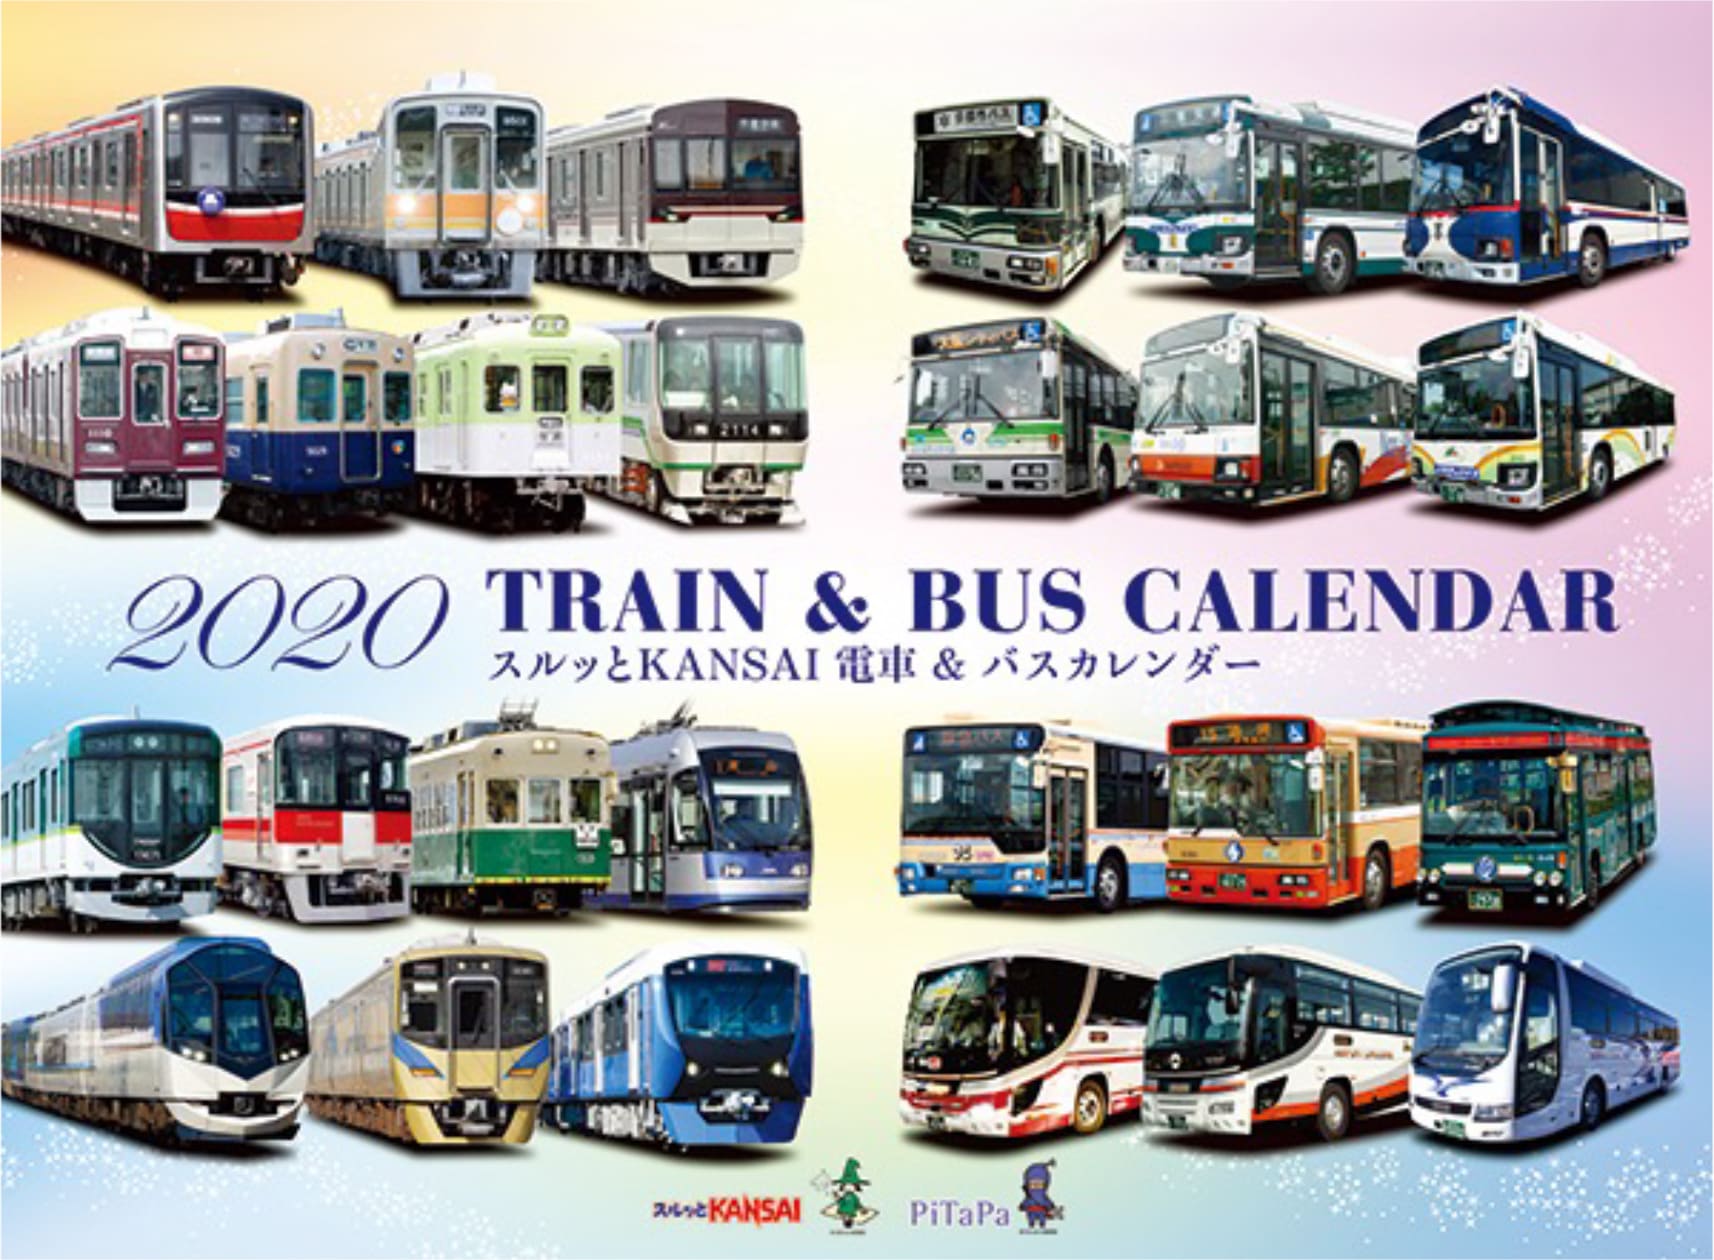 2020 TRAIN & BUS CALENDER